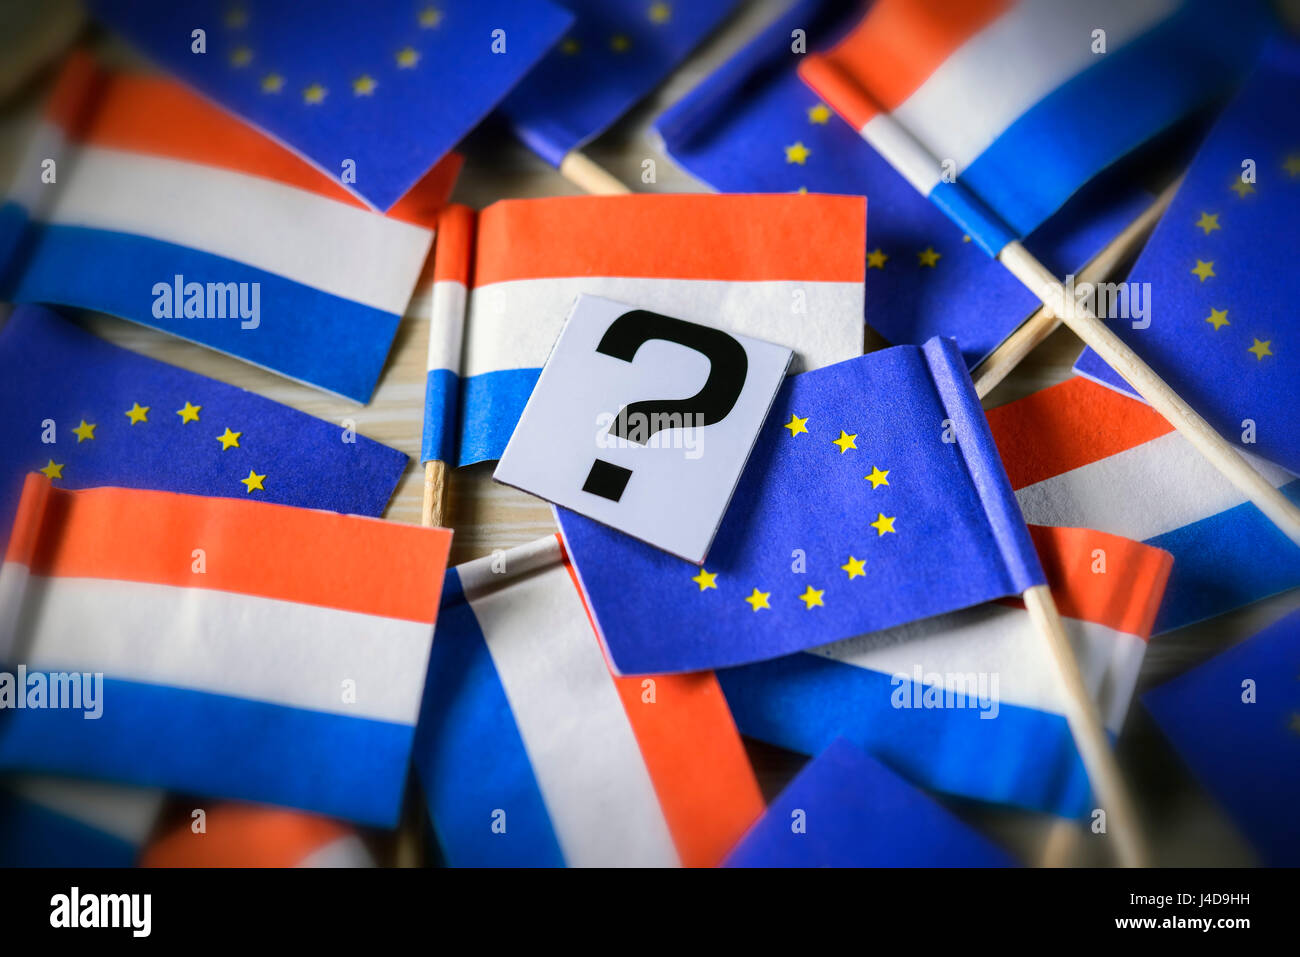 Flags of the Netherlands and the EU, parliamentary election in the Netherlands, Fahnen von den Niederlanden und der EU, Parlamentswahl in den Niederla Stock Photo